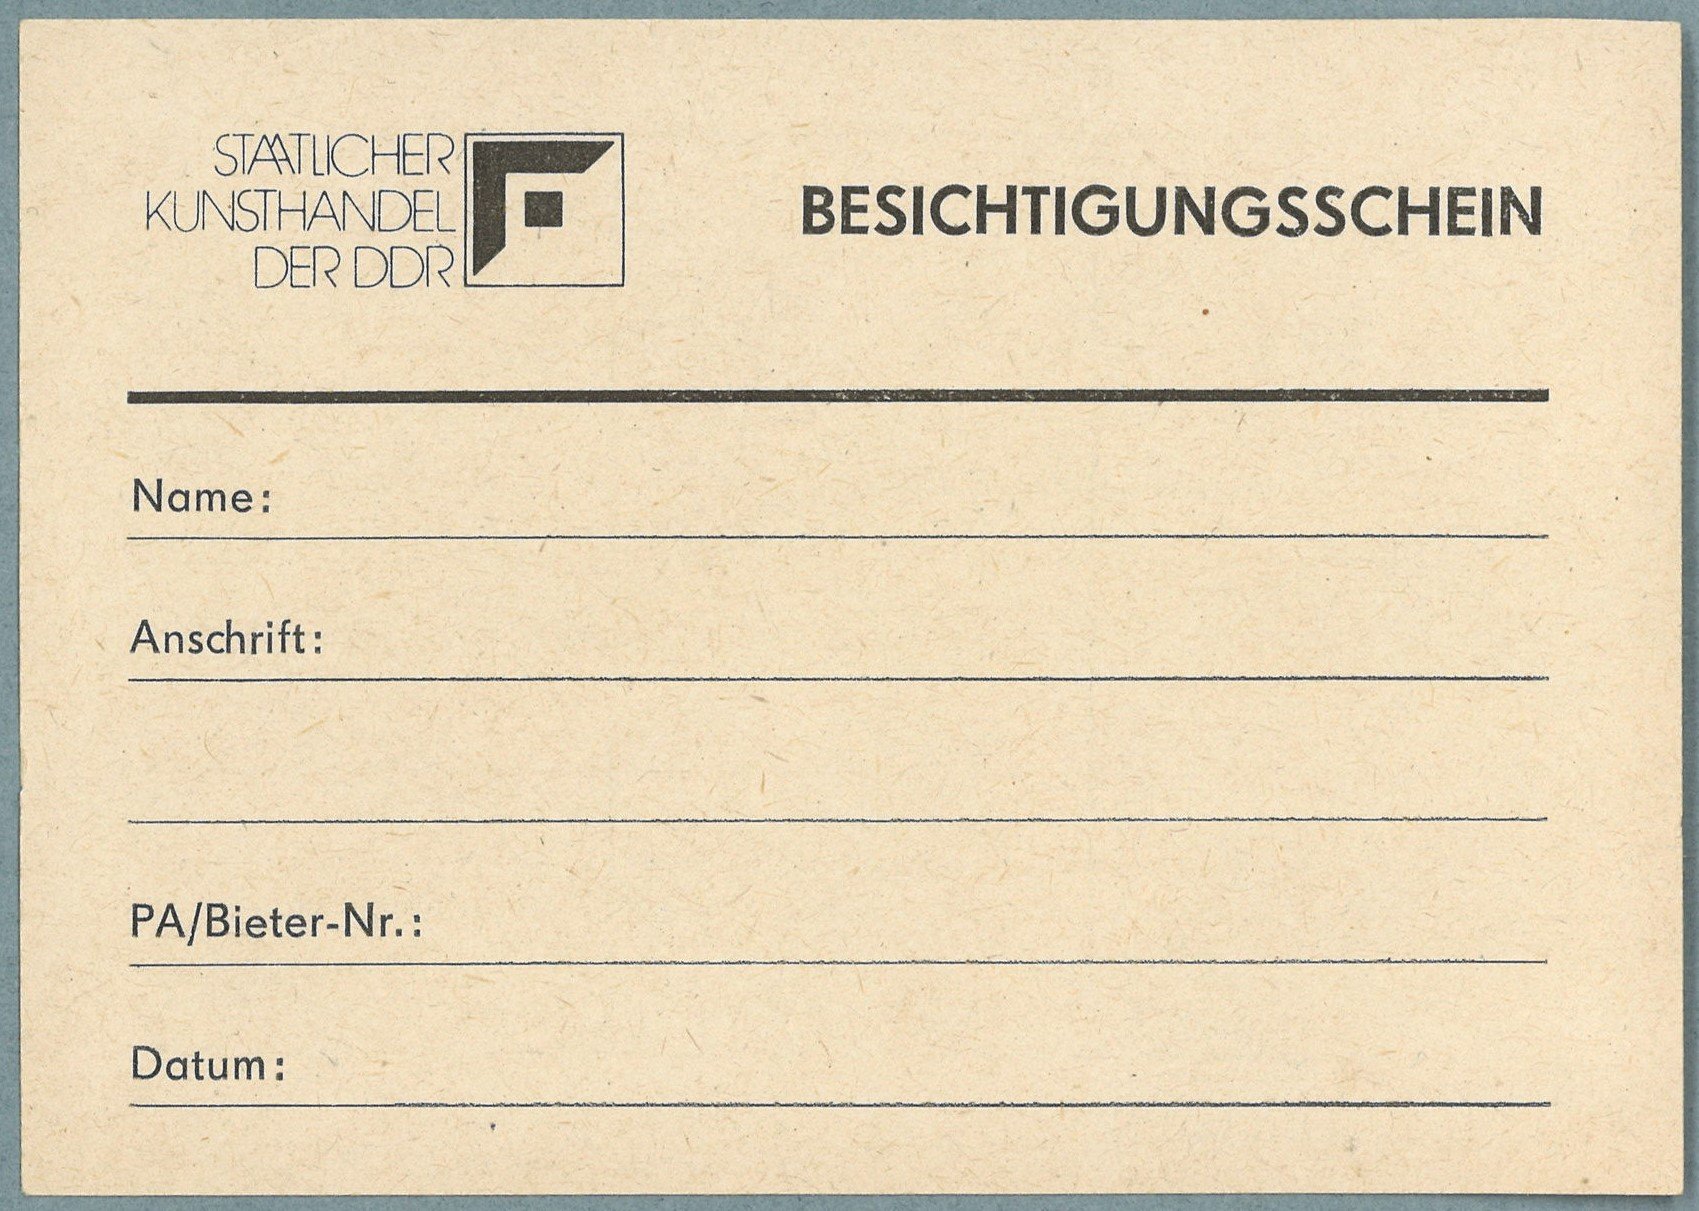 Staatlicher Kunsthandel der DDR: Besichtigungsschein (Landesgeschichtliche Vereinigung für die Mark Brandenburg e.V., Archiv CC BY)